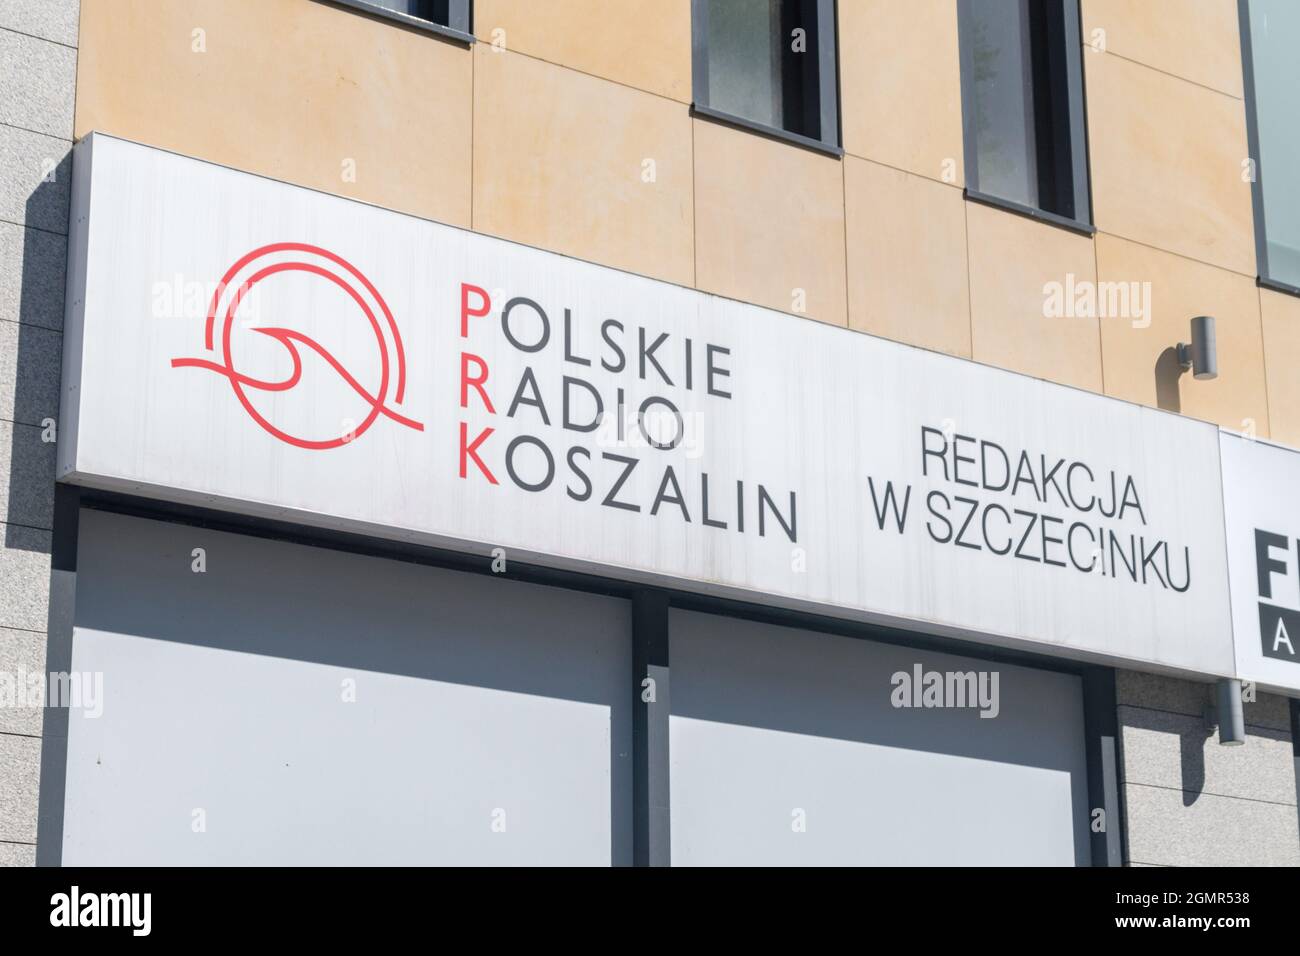 Szczecinek, Poland - May 31, 2021: Polish Radio Koszalin (Polish: Polskie Radio Koszalin), editorial office in Szczecinek. Stock Photo